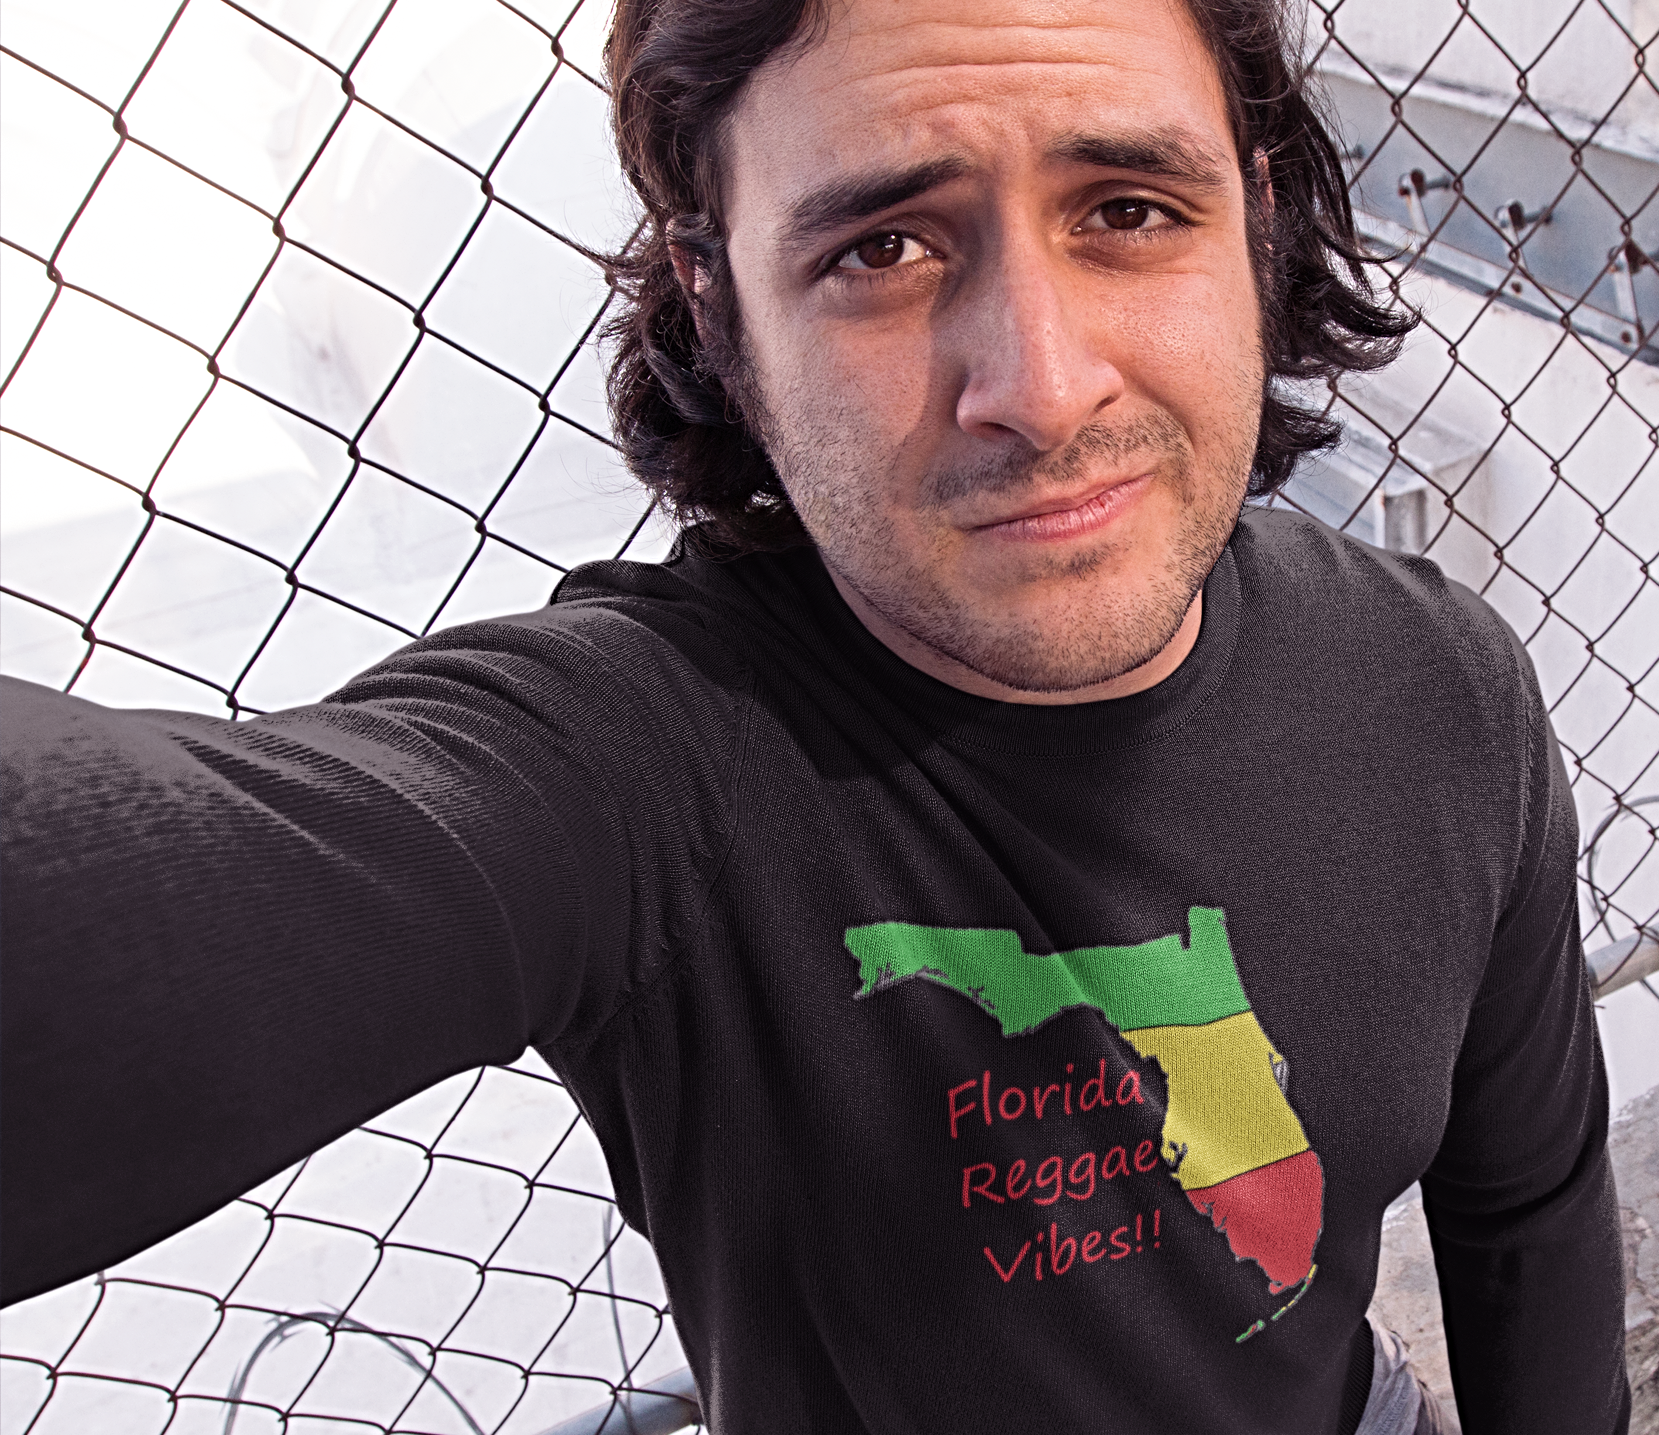 Florida Reggae Vibes! Long Sleeve reggae clothing